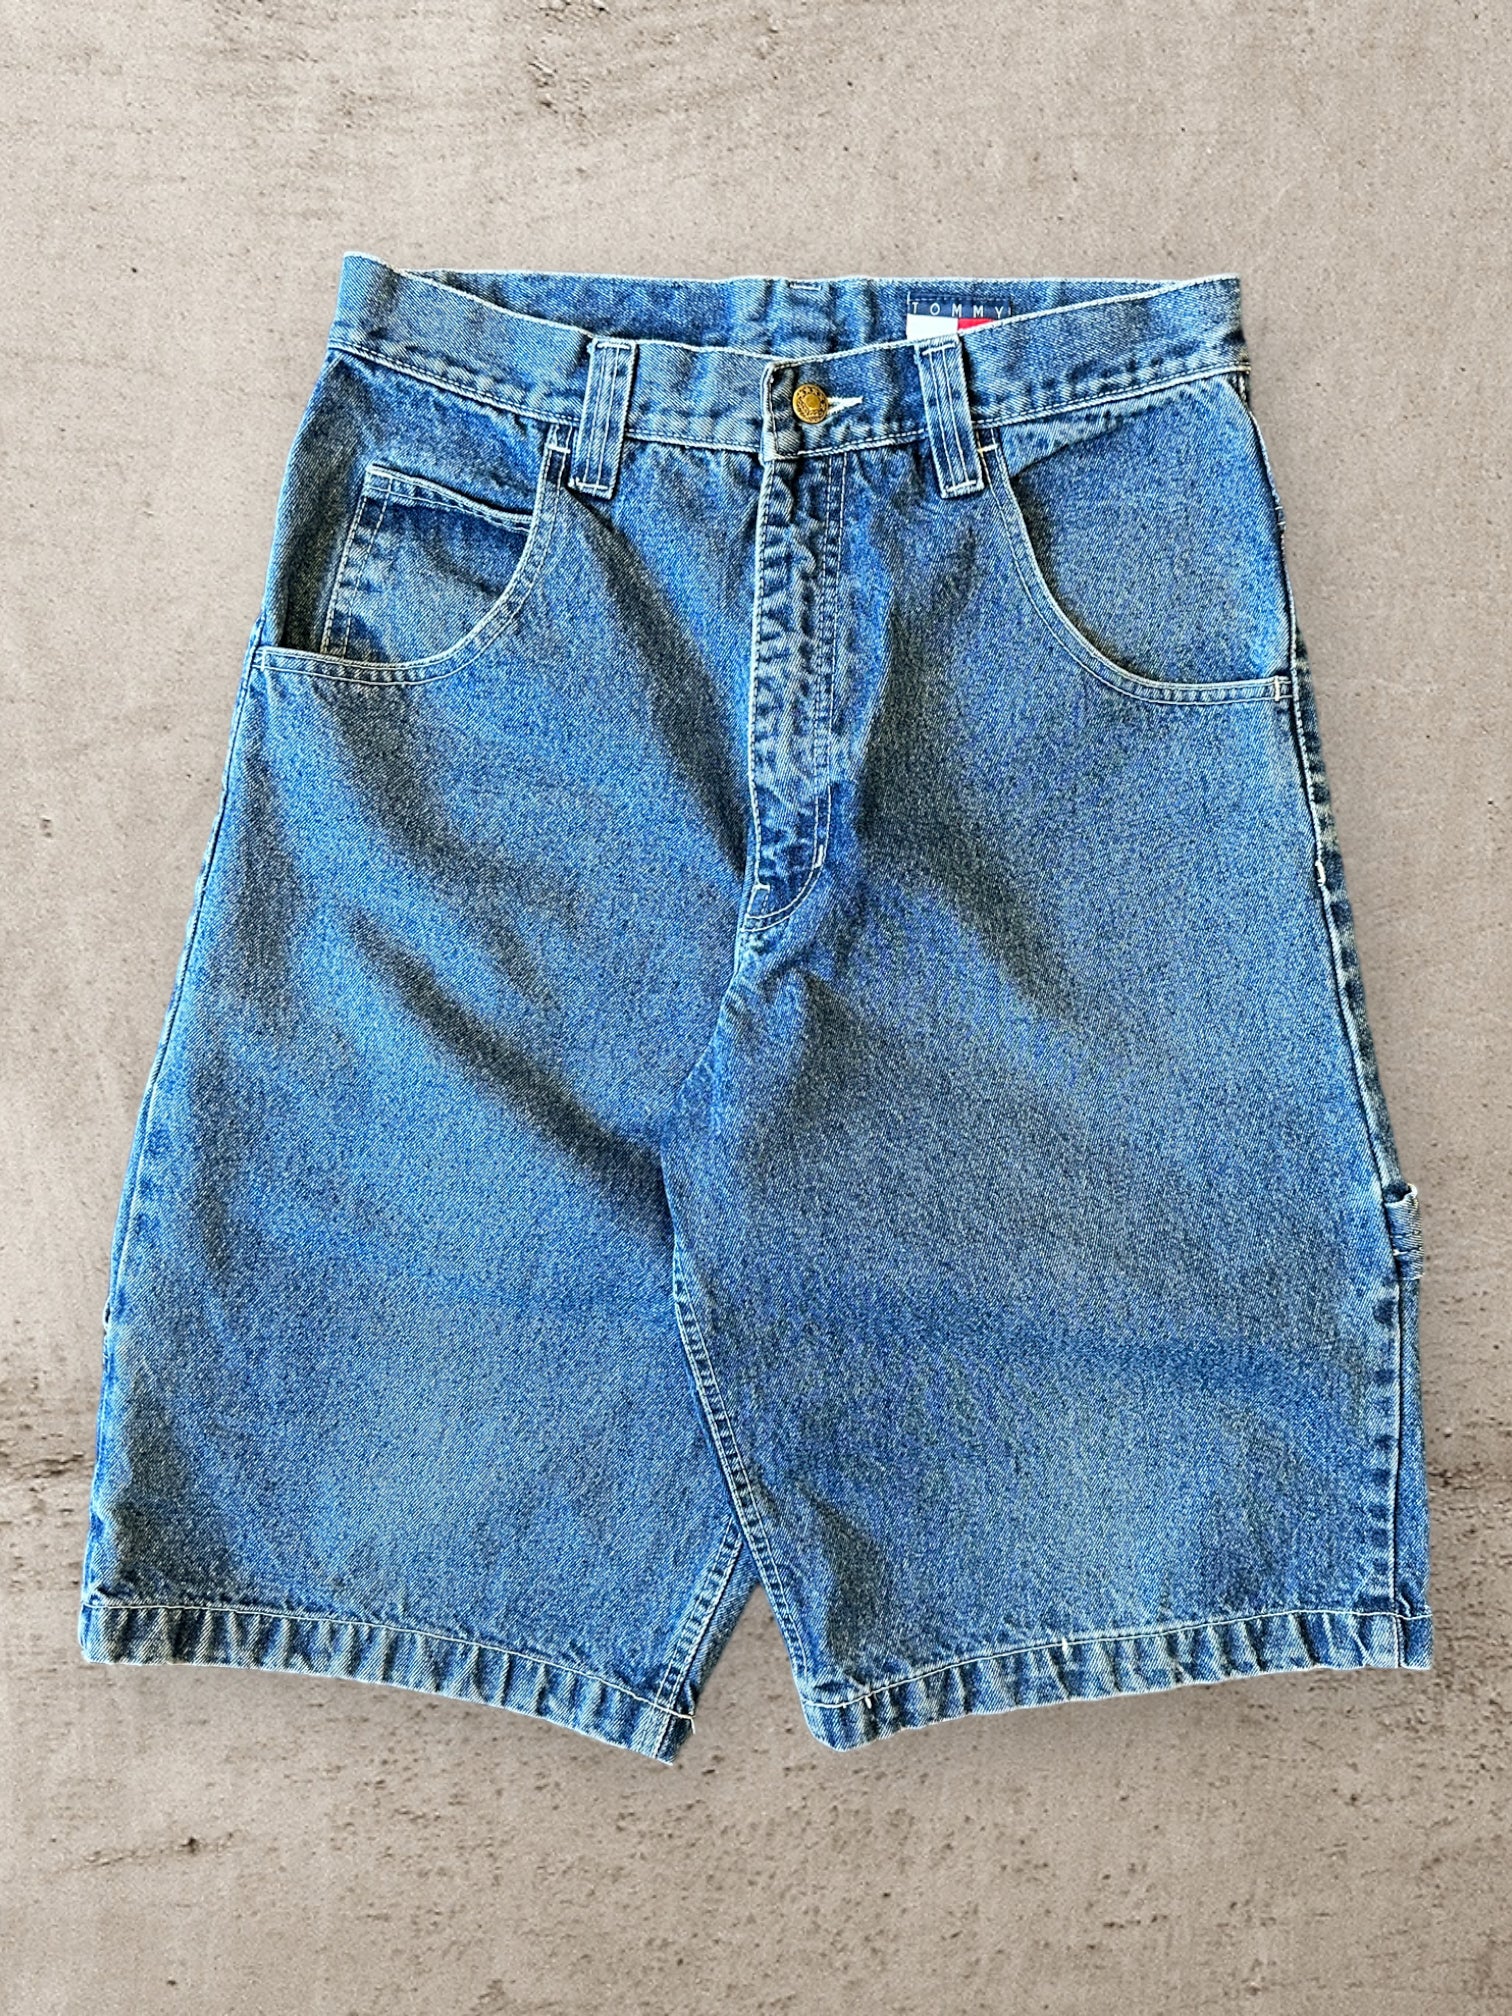 90s Tommy Hilfiger Medium Wash Denim Baggy Shorts - 32”